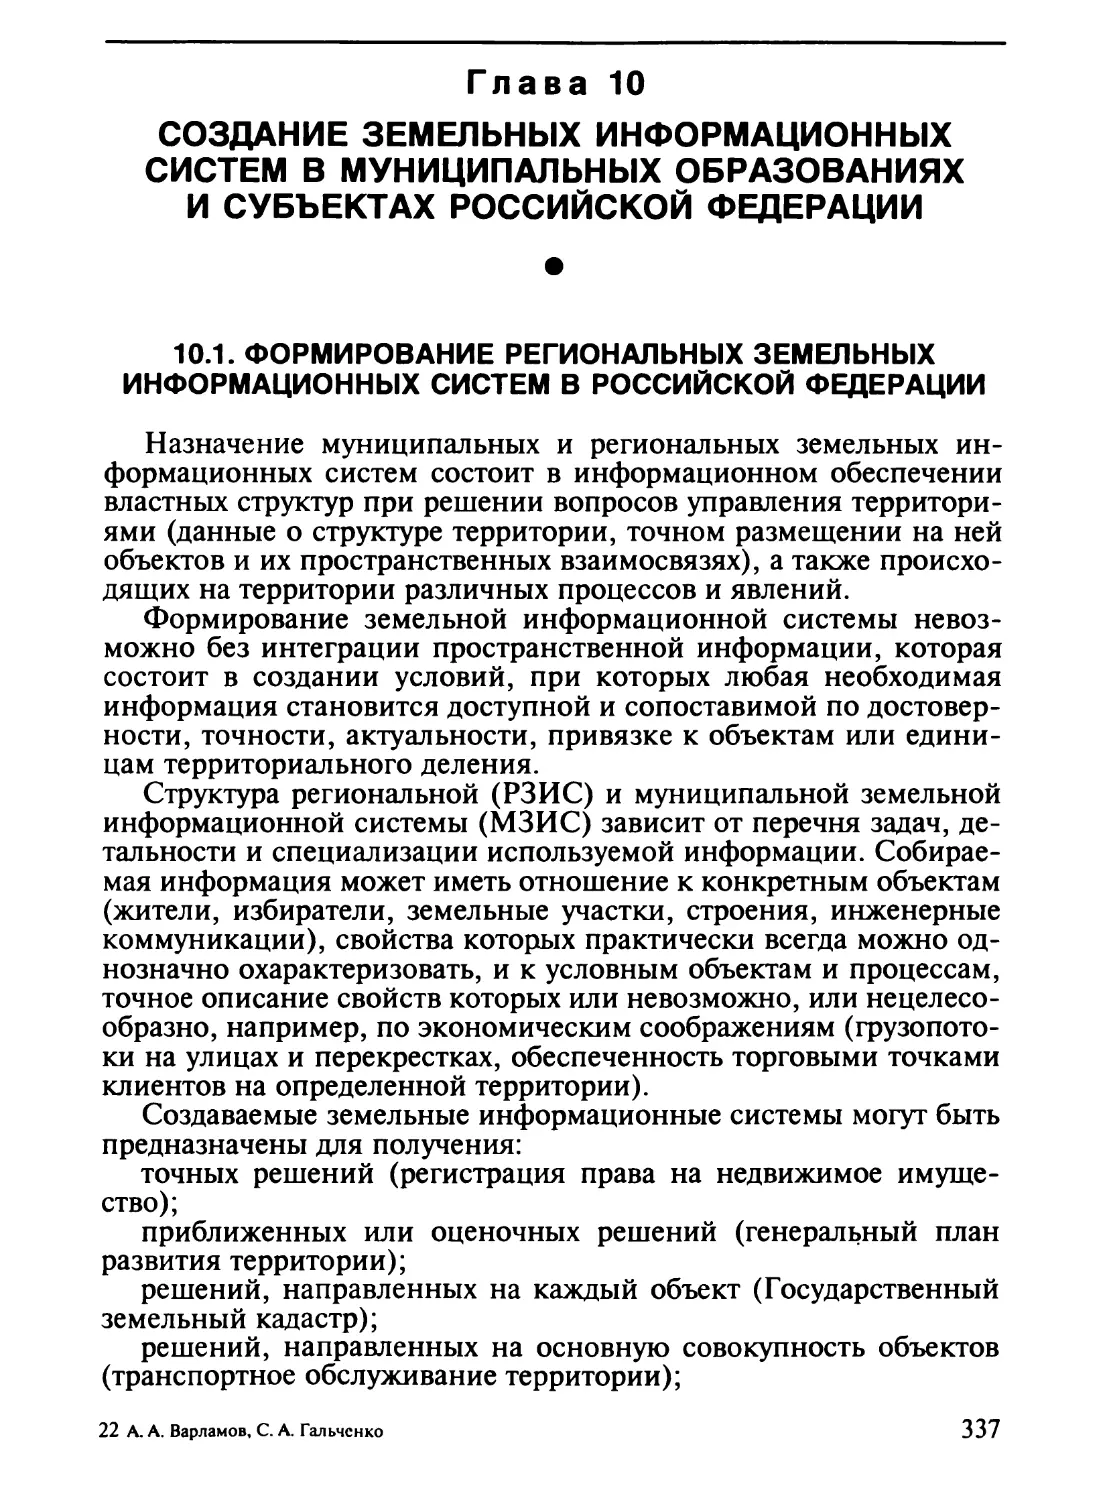 Глава 10. Создание земельных информационных систем в муниципальных образованиях и субъектах Российской Федерации